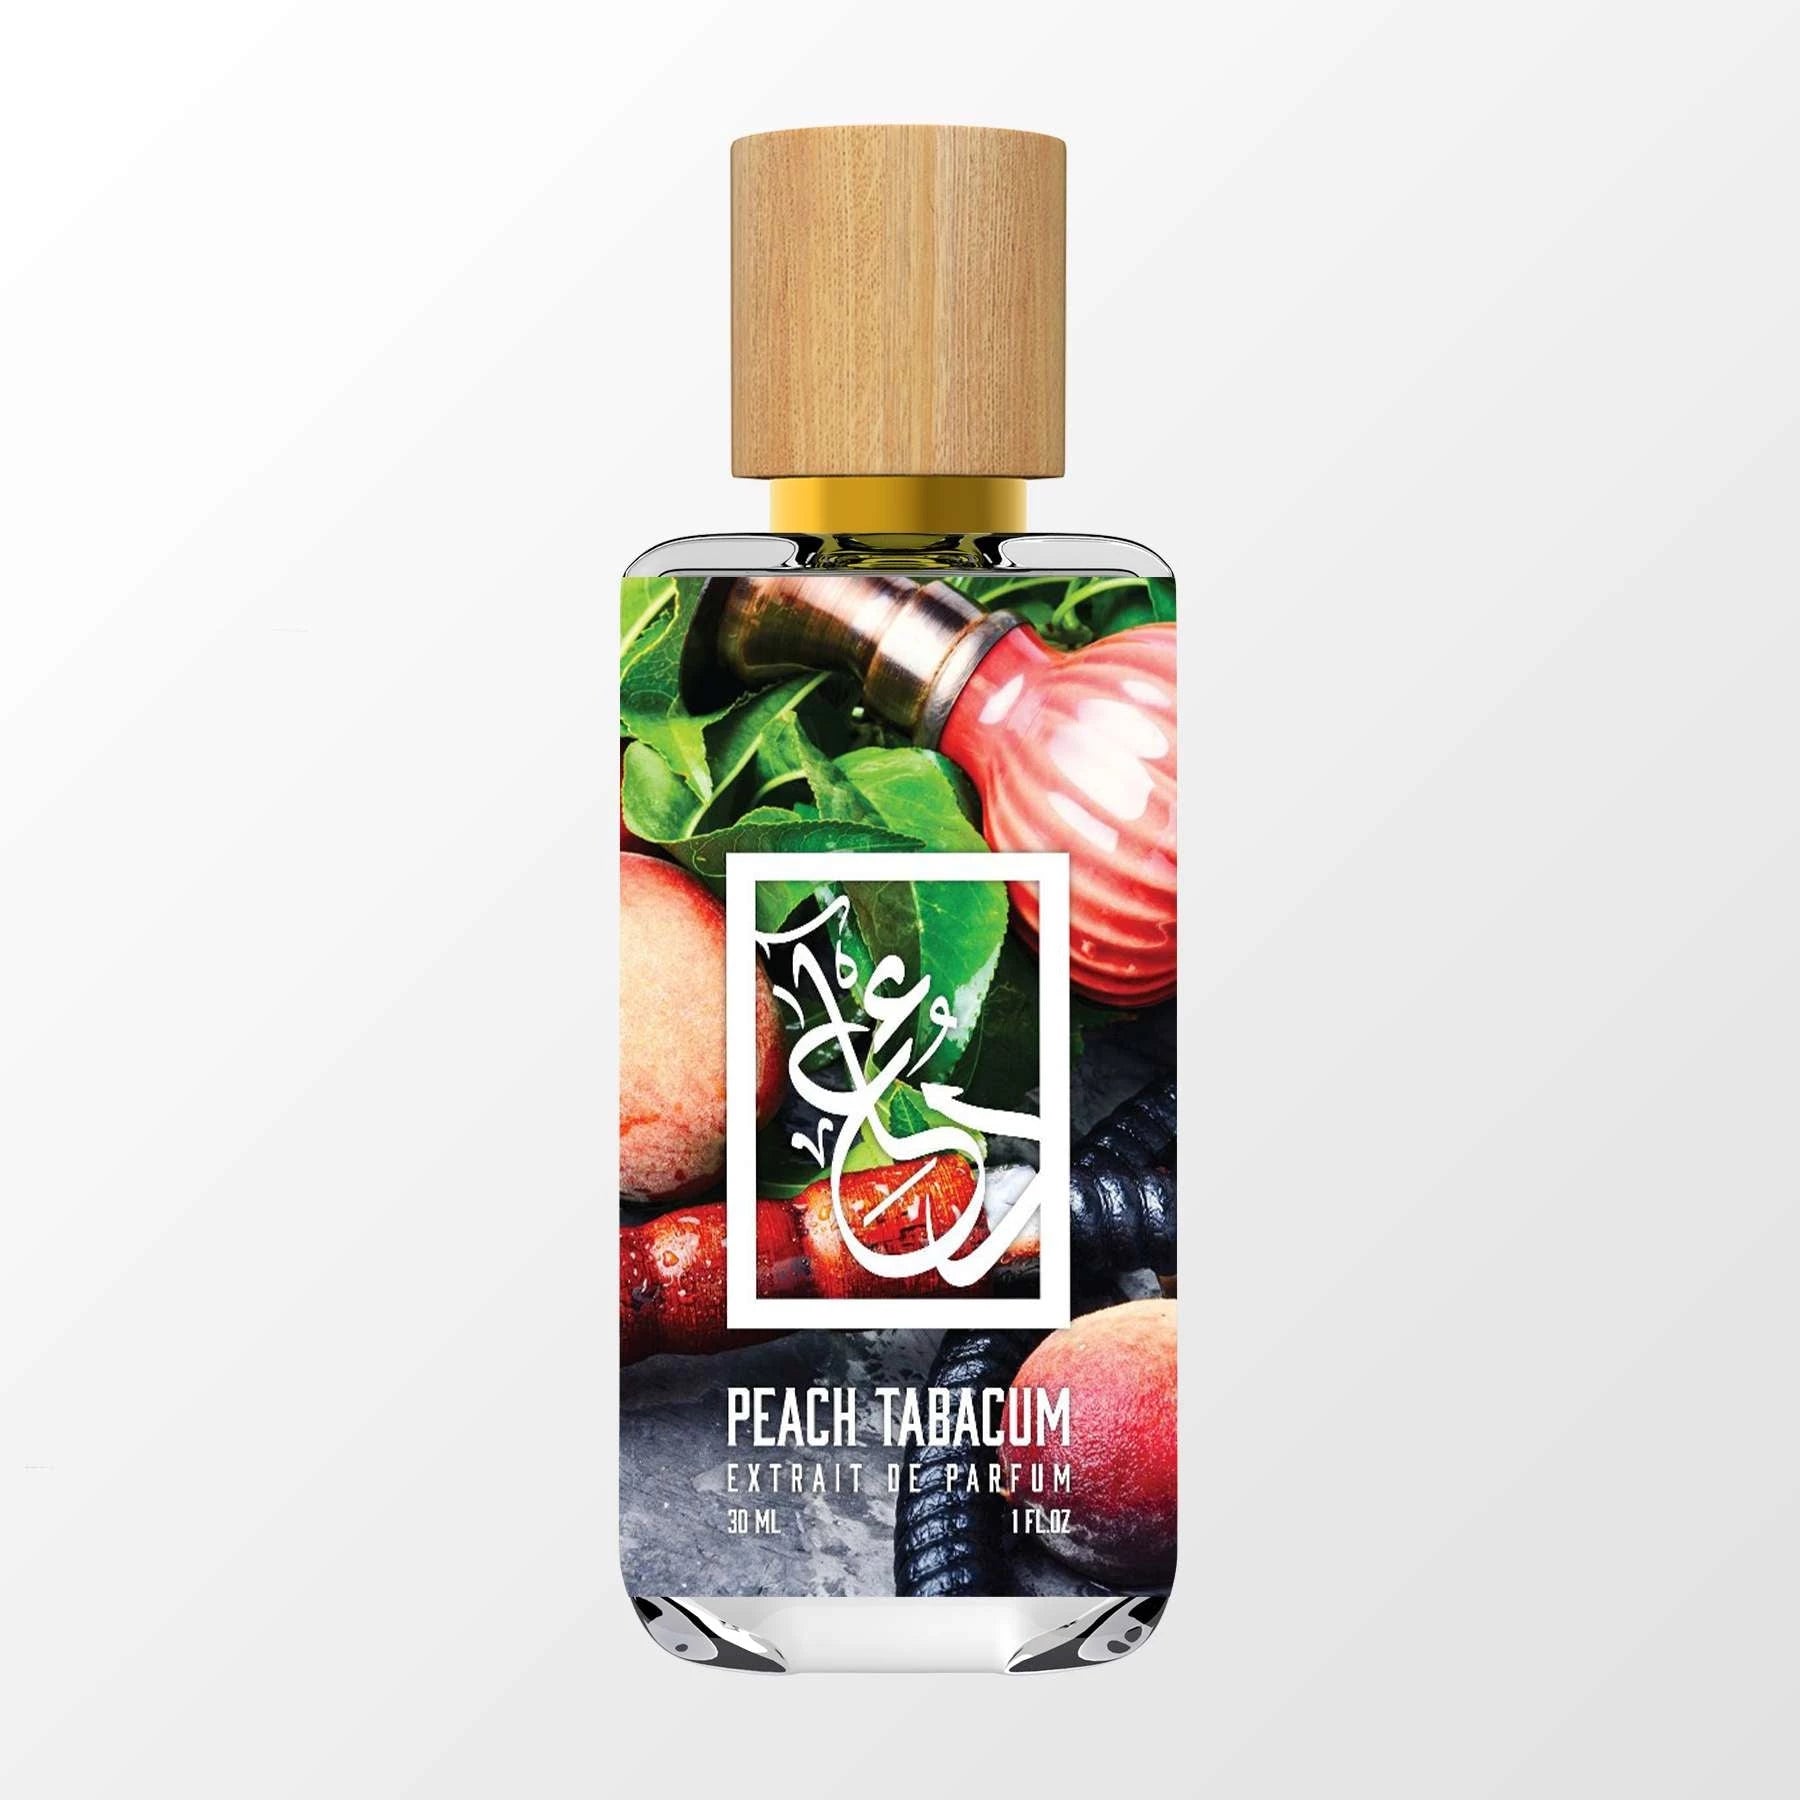 Aphrodisiac Fire - Dua Fragrances - Floral Oriental - Unisex Perfume - 34ml/1.1 fl oz - Extrait de Parfum